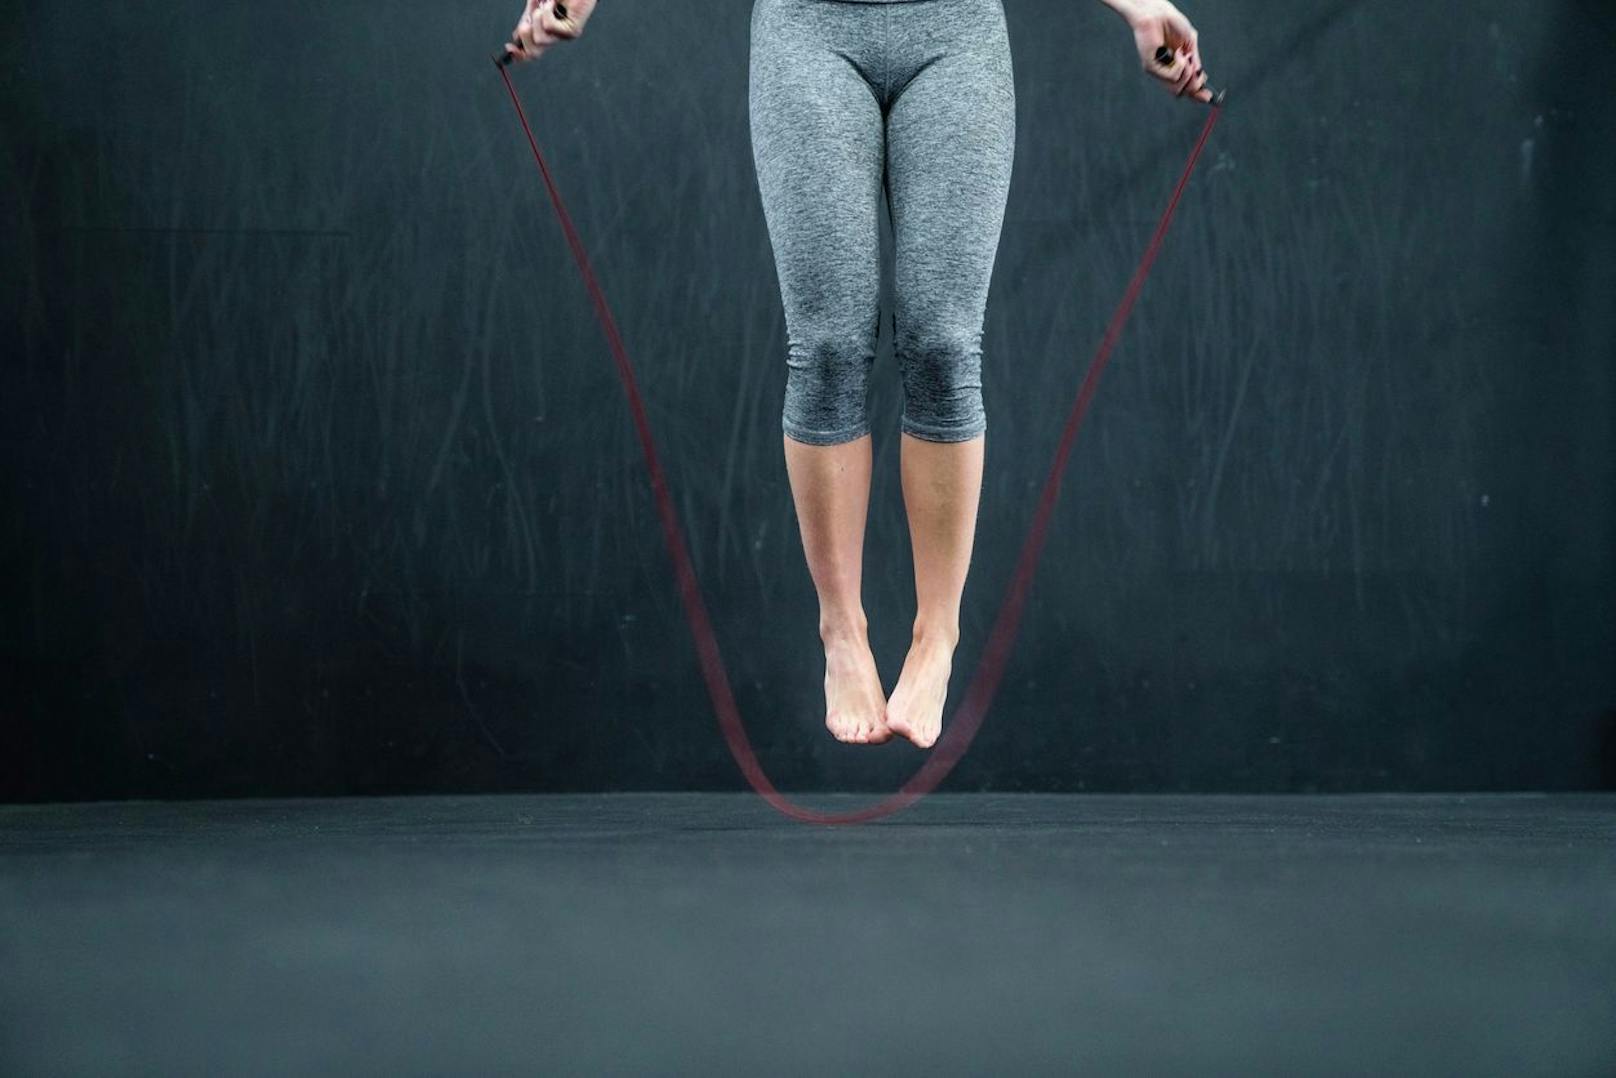 Seilspringen kann deine Sehnen elastischer machen und in die Hocke gehen sorgt für eine bessere Balance. Diese Übungen solltest du vor dem Laufen in Form eines Trainings unterbringen.